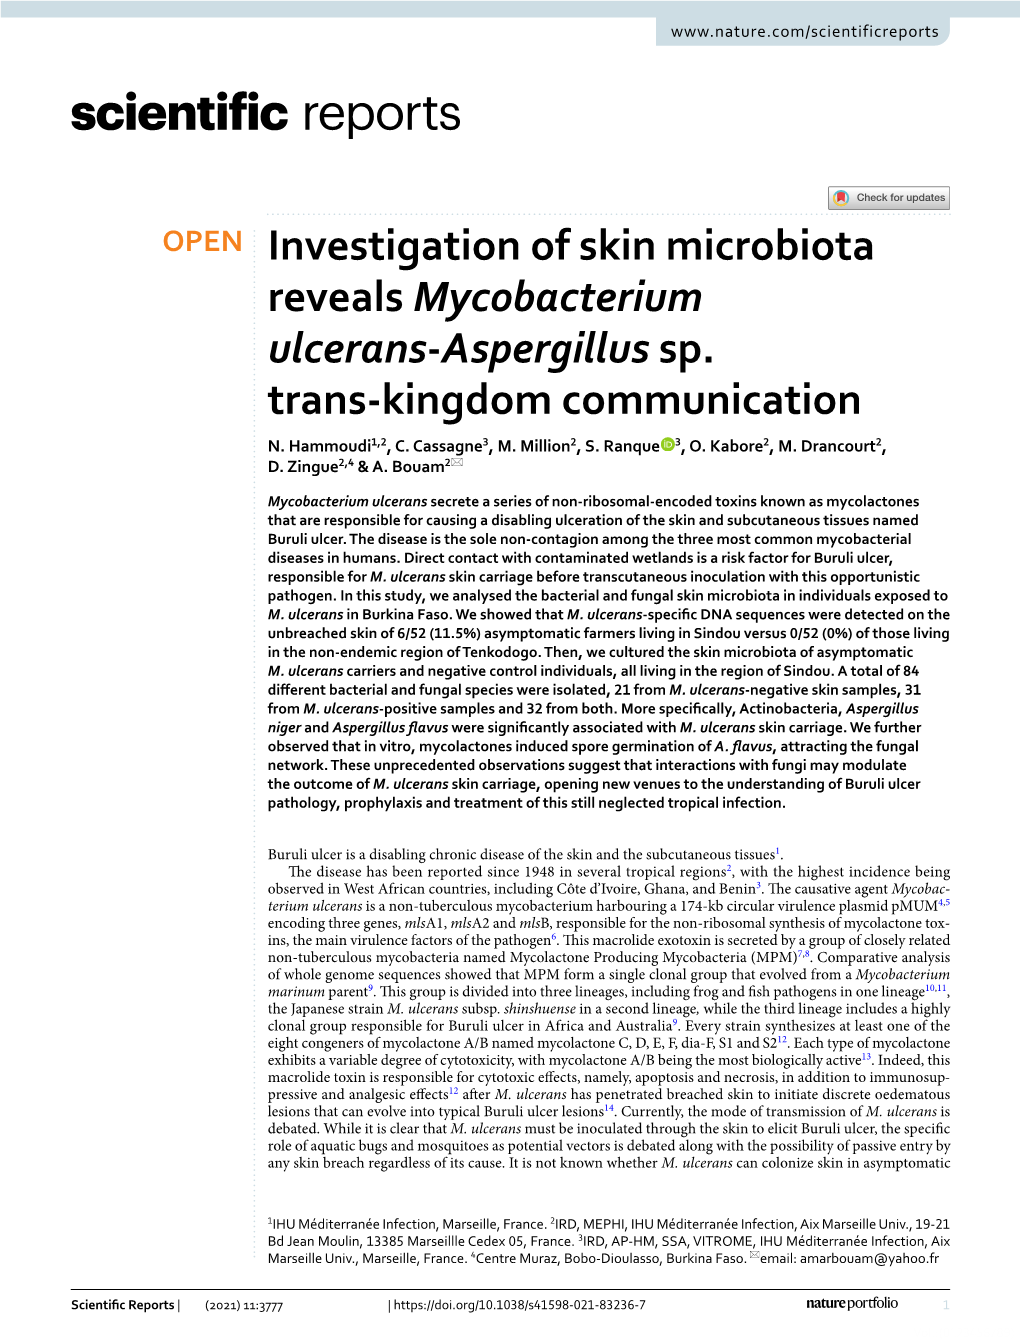 Investigation of Skin Microbiota Reveals Mycobacterium Ulcerans‑Aspergillus Sp